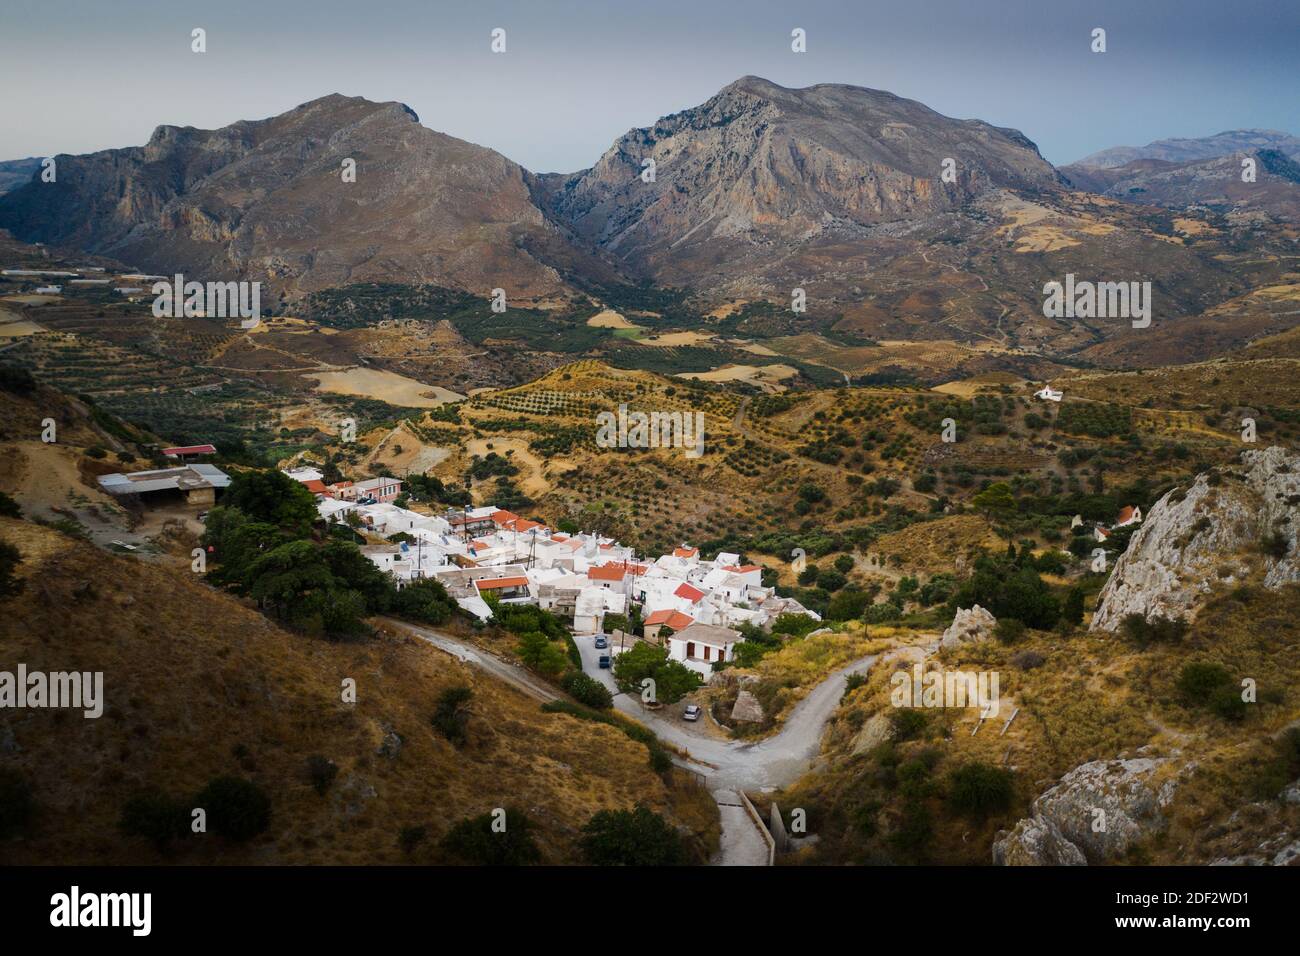 Village of Gianniou at Crete, Greece Stock Photo